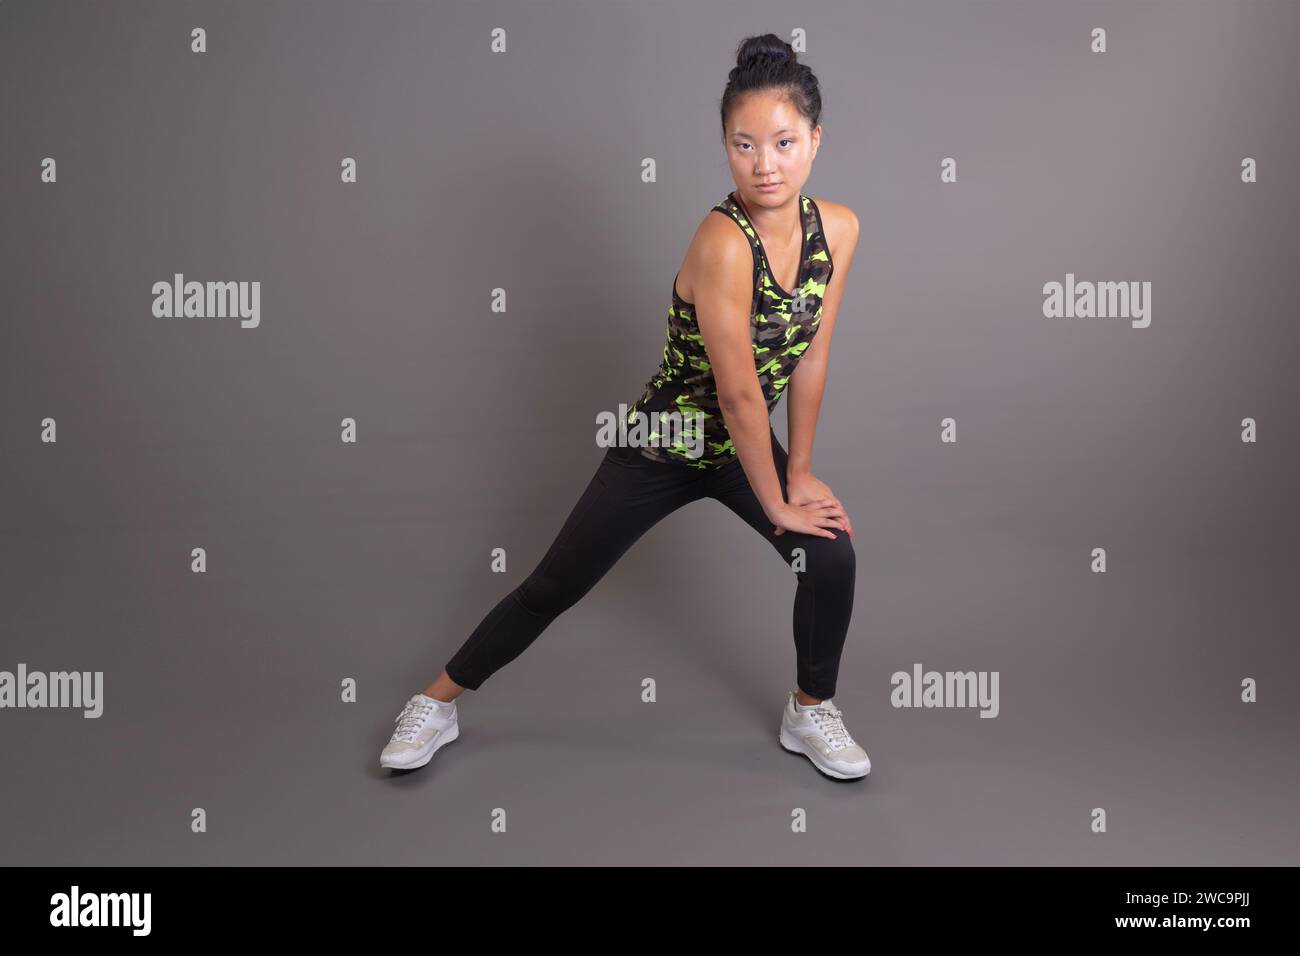 Junge asiatische Frau, die eine aktive Fitness-Haltung hat Stockfoto